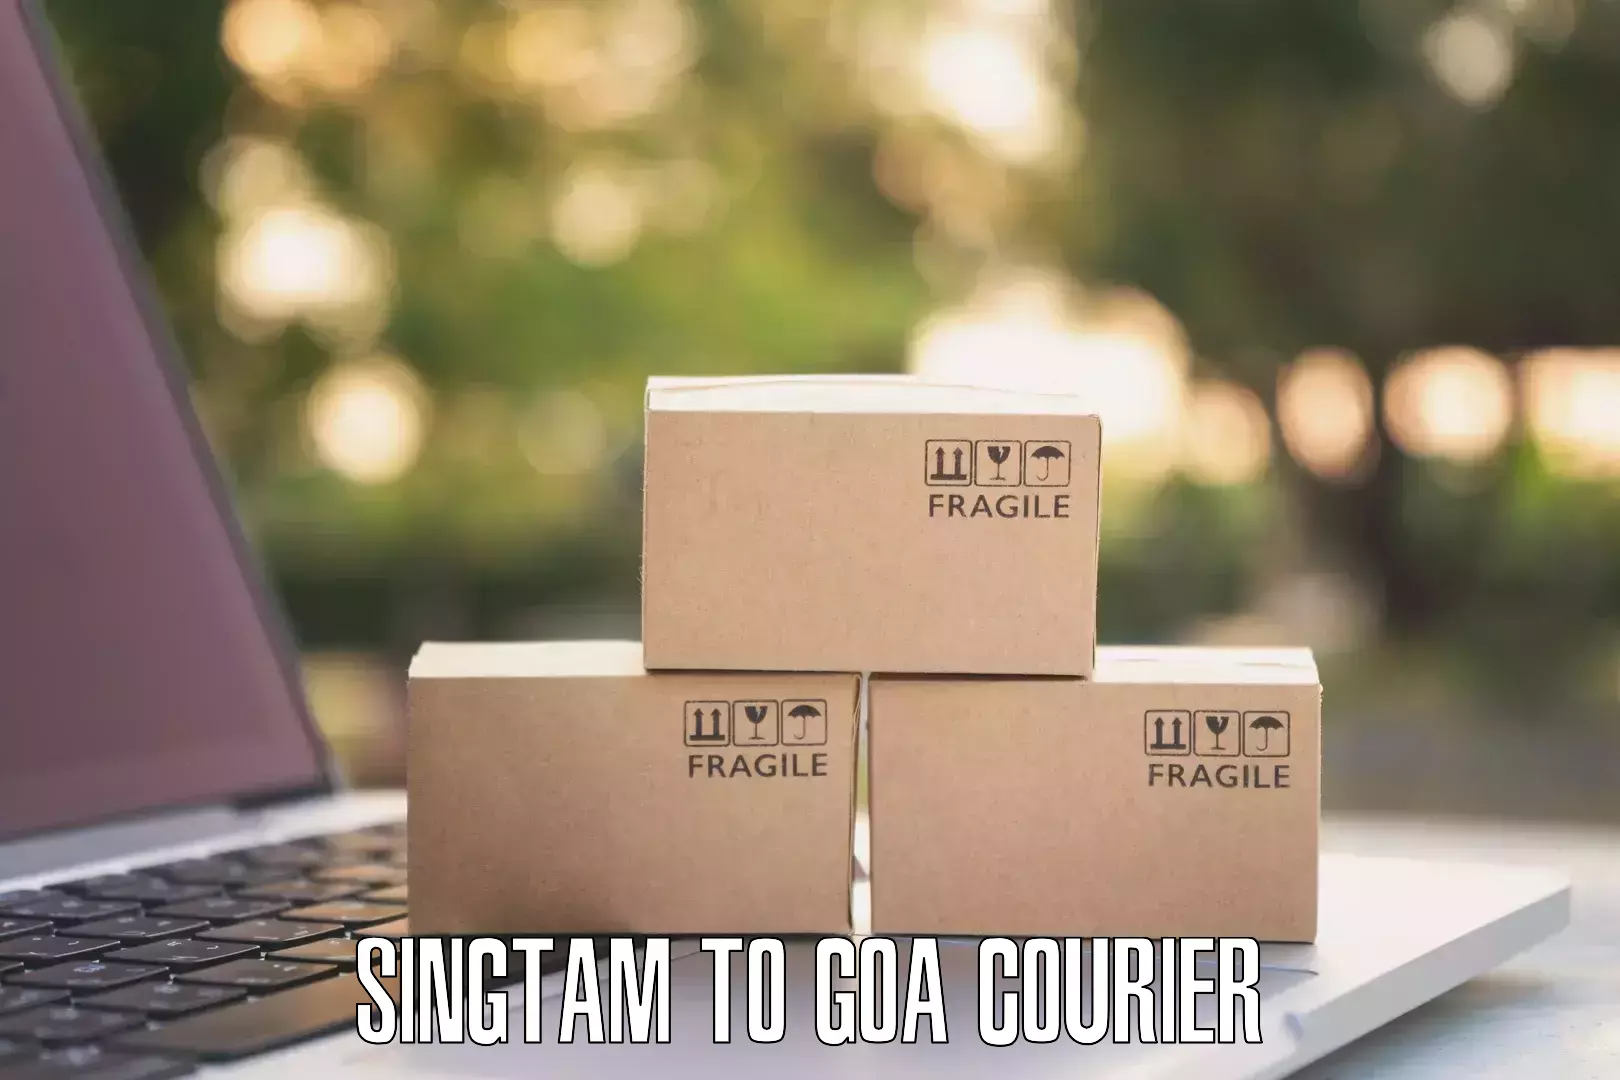 Logistics management Singtam to South Goa